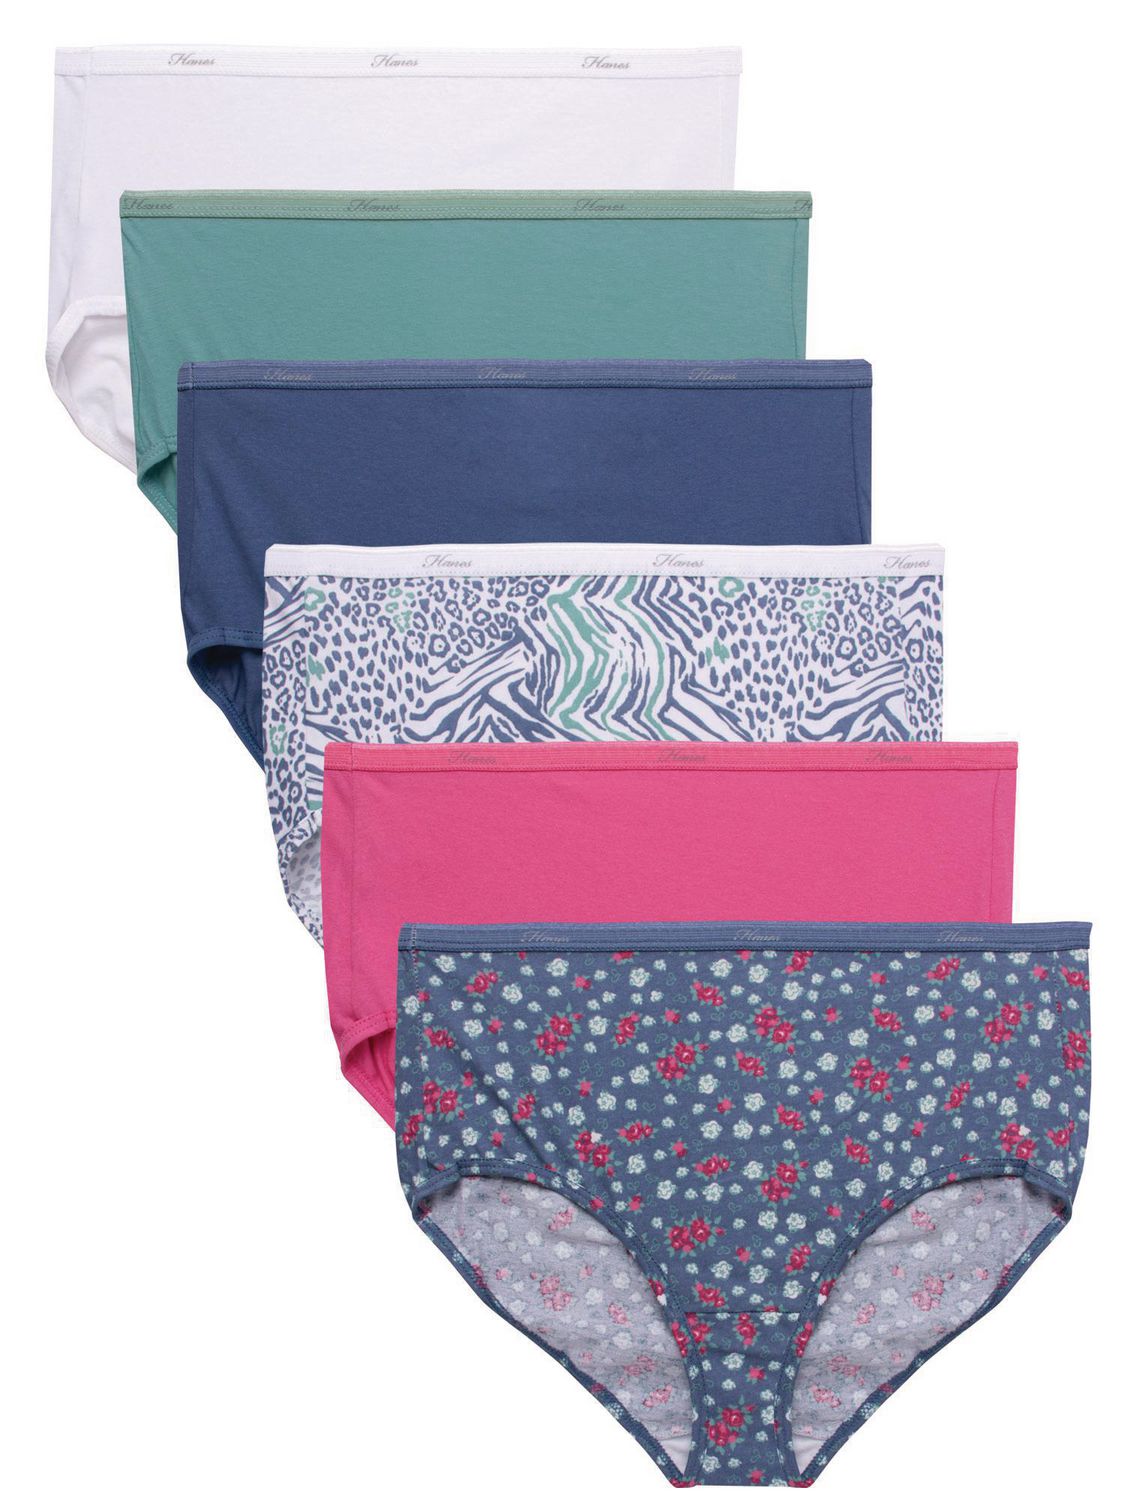 Hanes 4716 Womens White 8pk Cotton Underwear Brief Panty Set 6 M